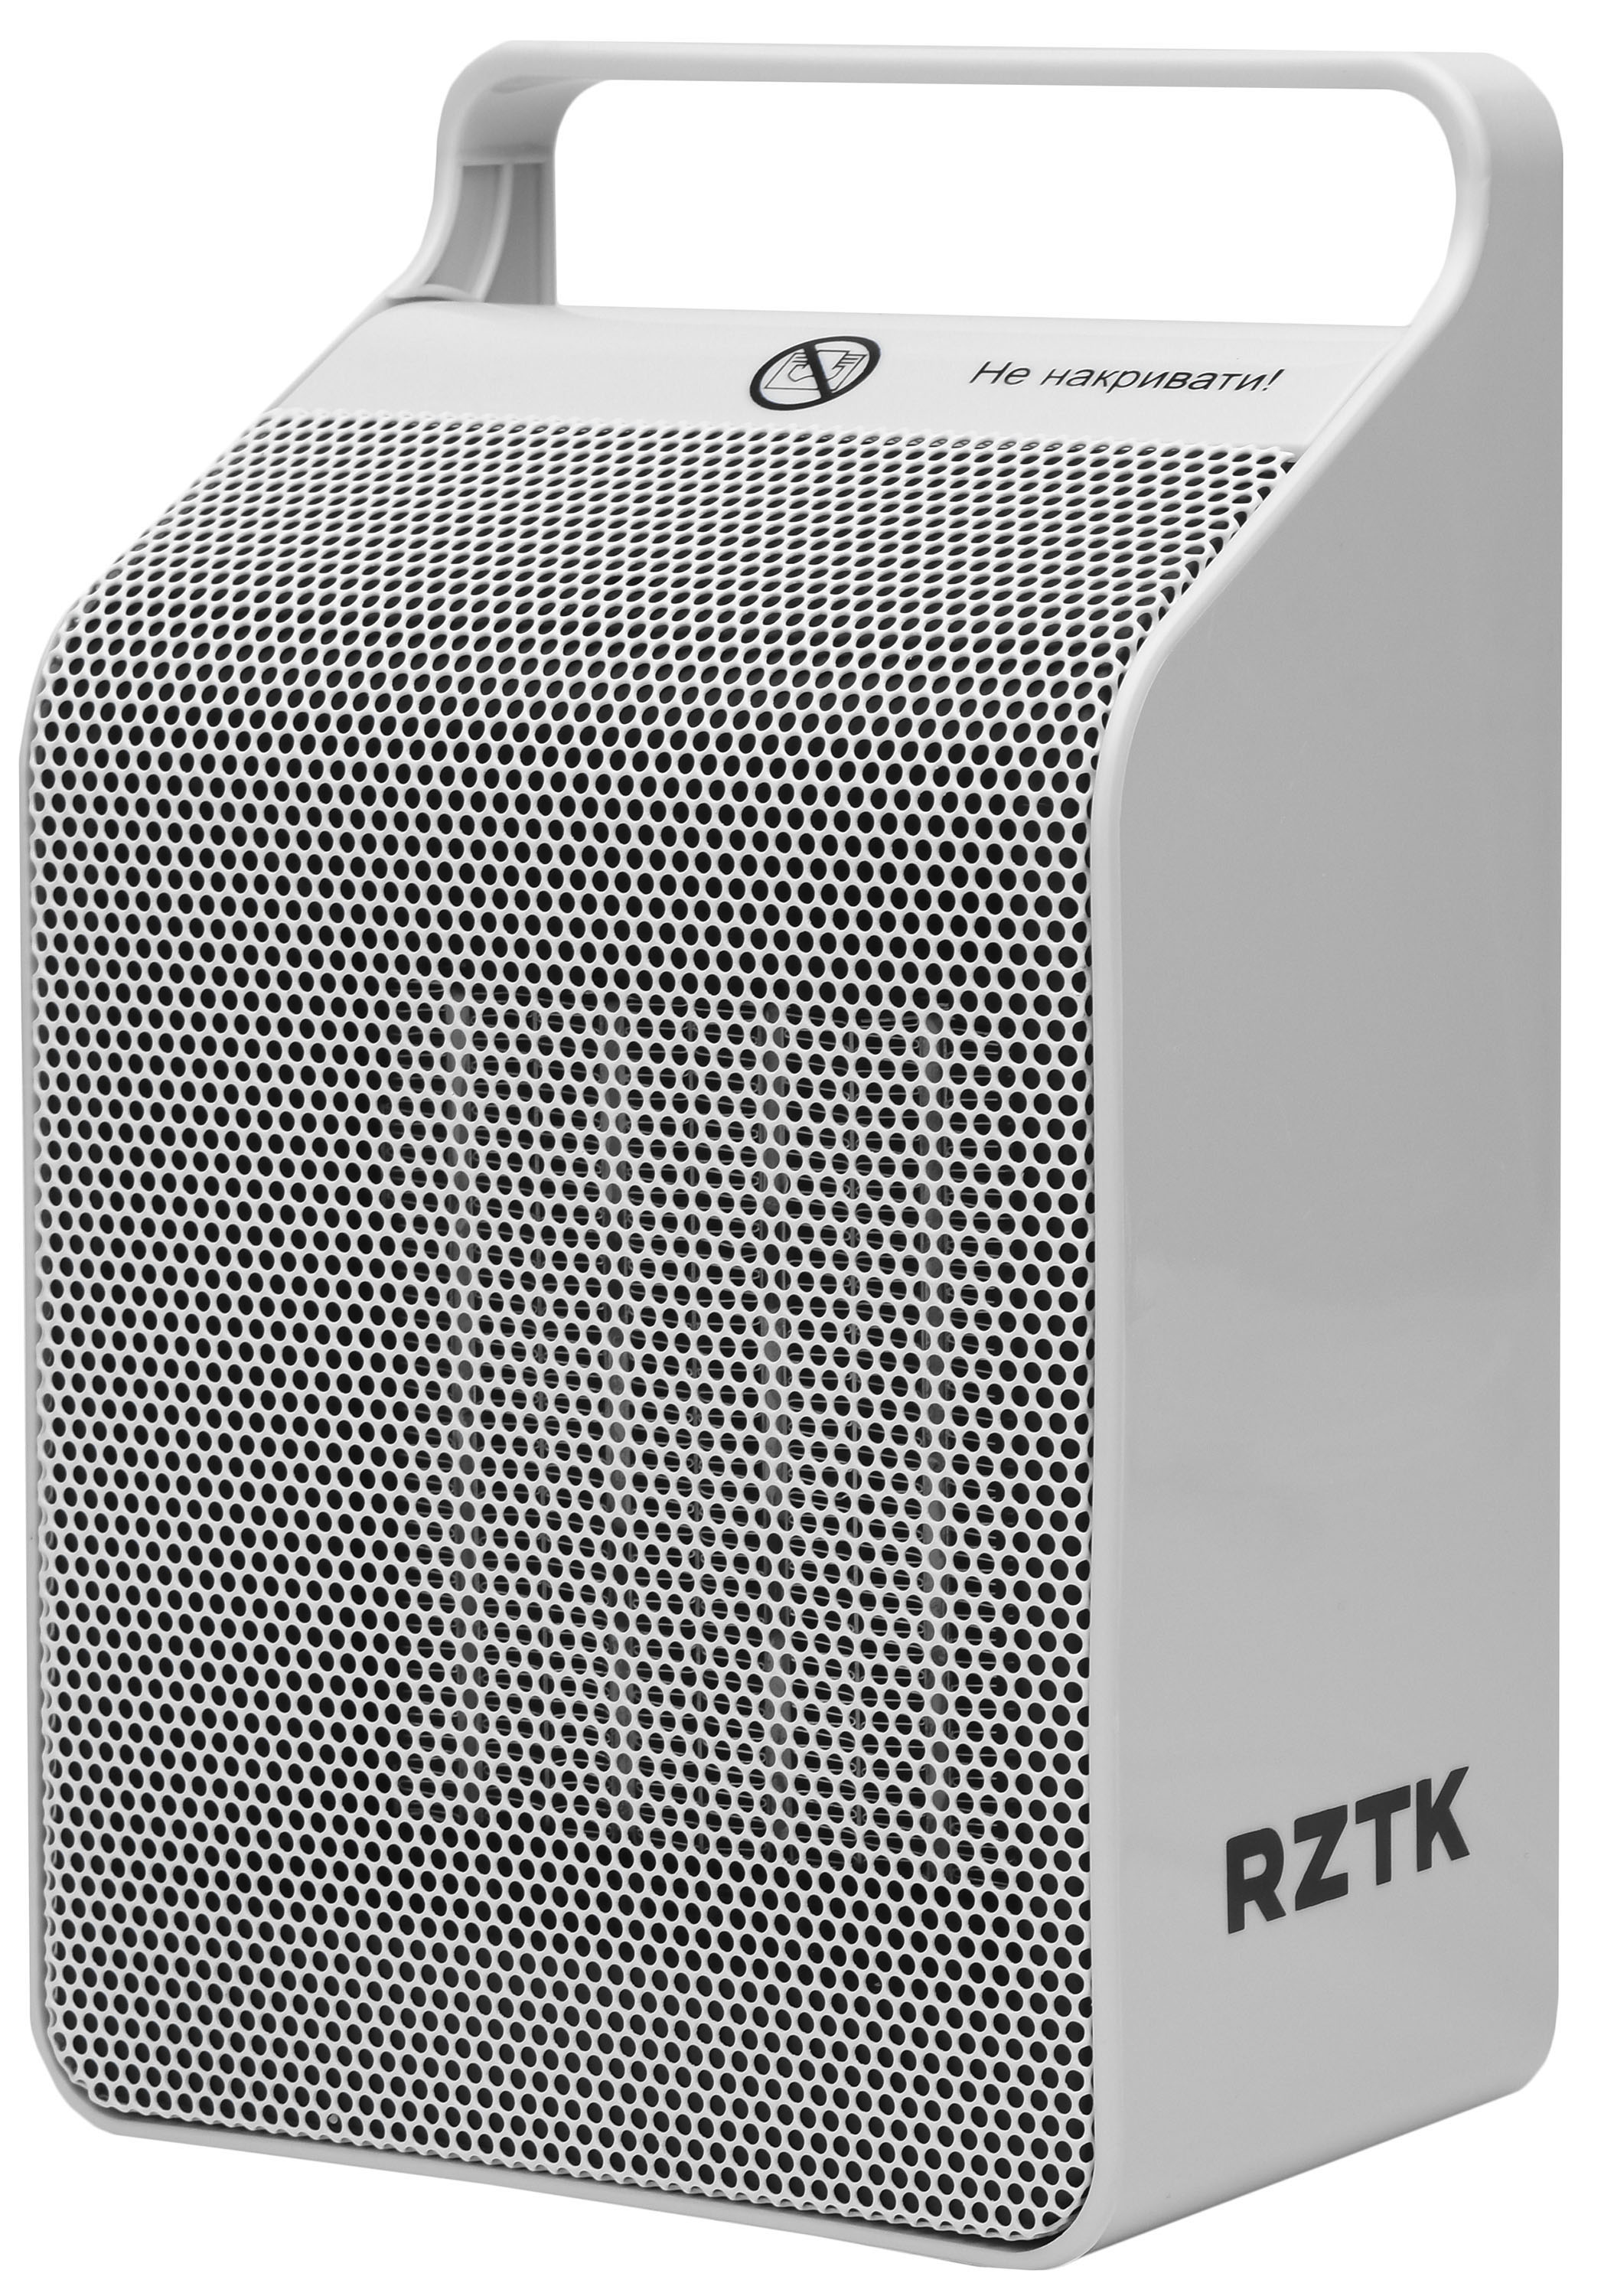 Тепловентилятор RZTK HG 2018H